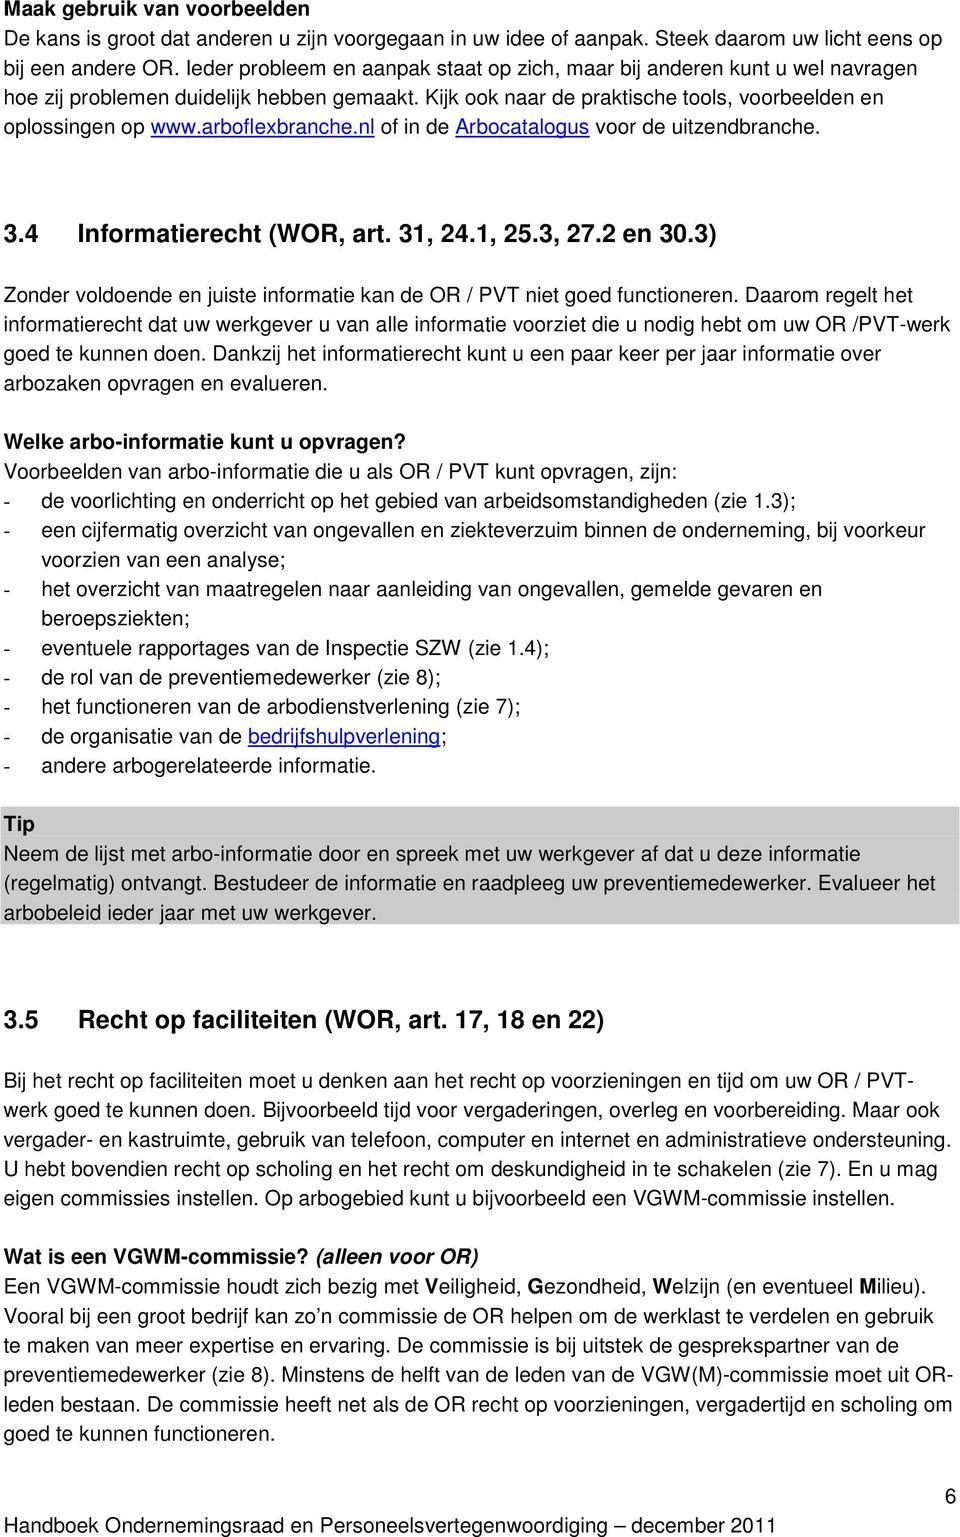 arboflexbranche.nl of in de Arbocatalogus voor de uitzendbranche. 3.4 Informatierecht (WOR, art. 31, 24.1, 25.3, 27.2 en 30.